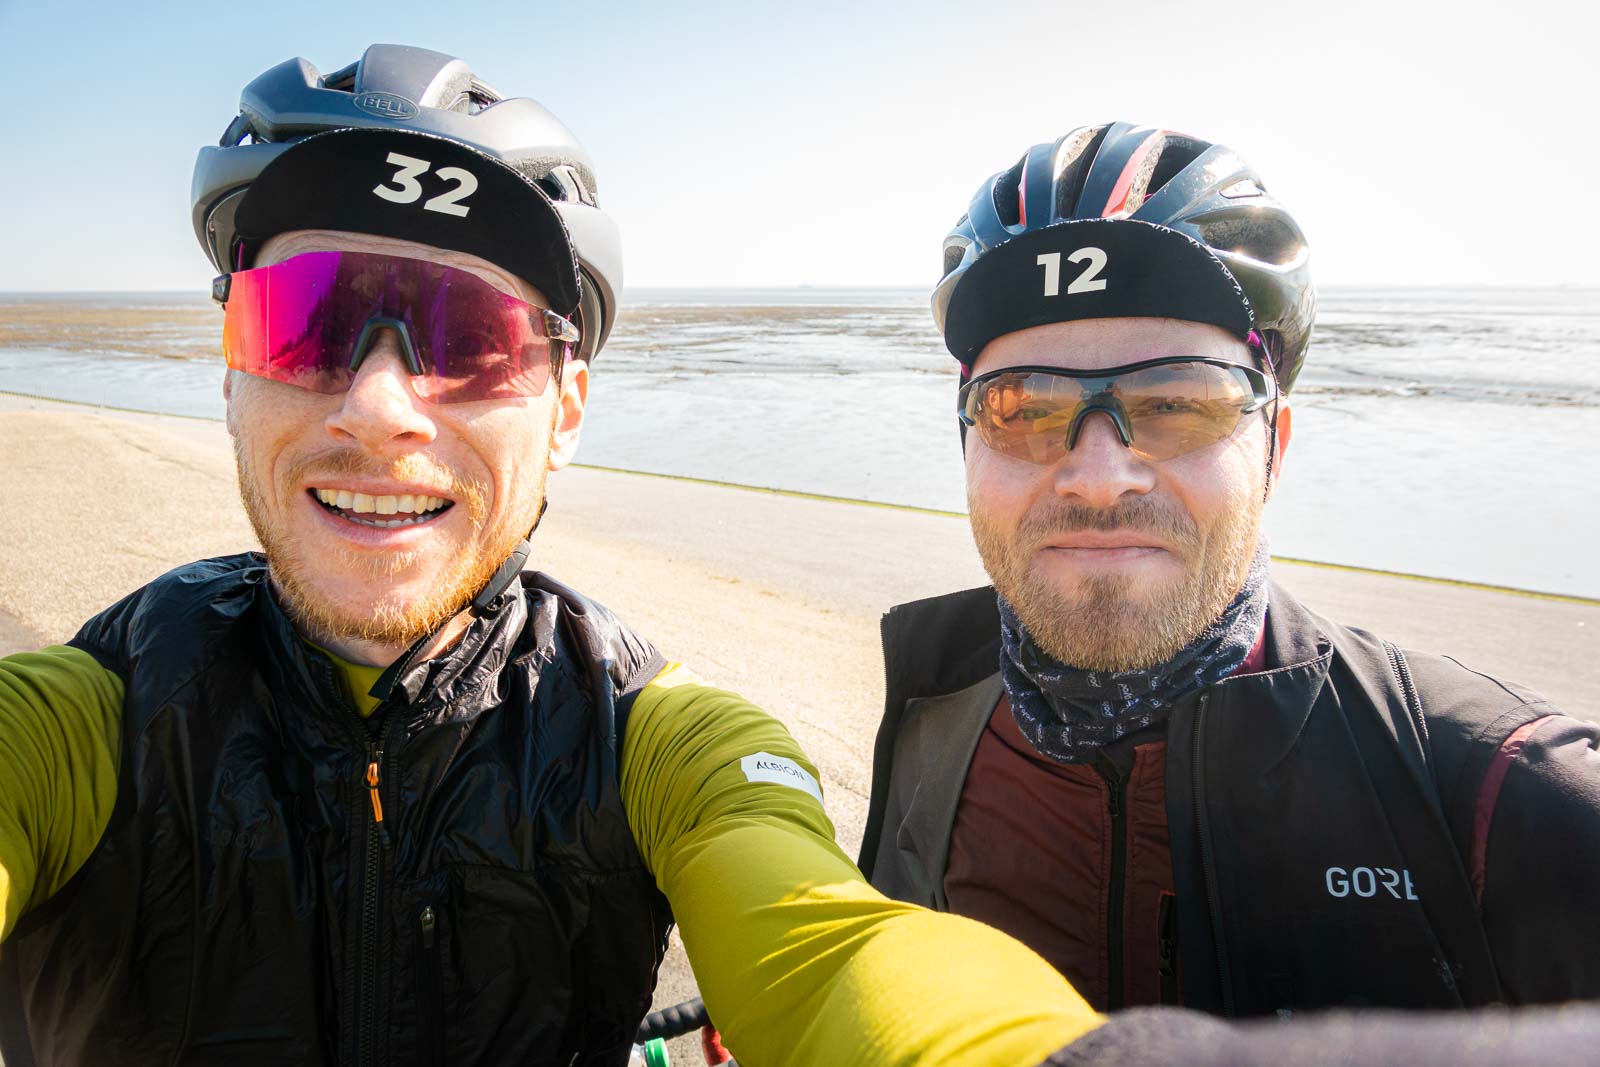 Twee fietsers nemen een selfie van zichzelf terwijl ze voor een strandpanorama staan en lachen.